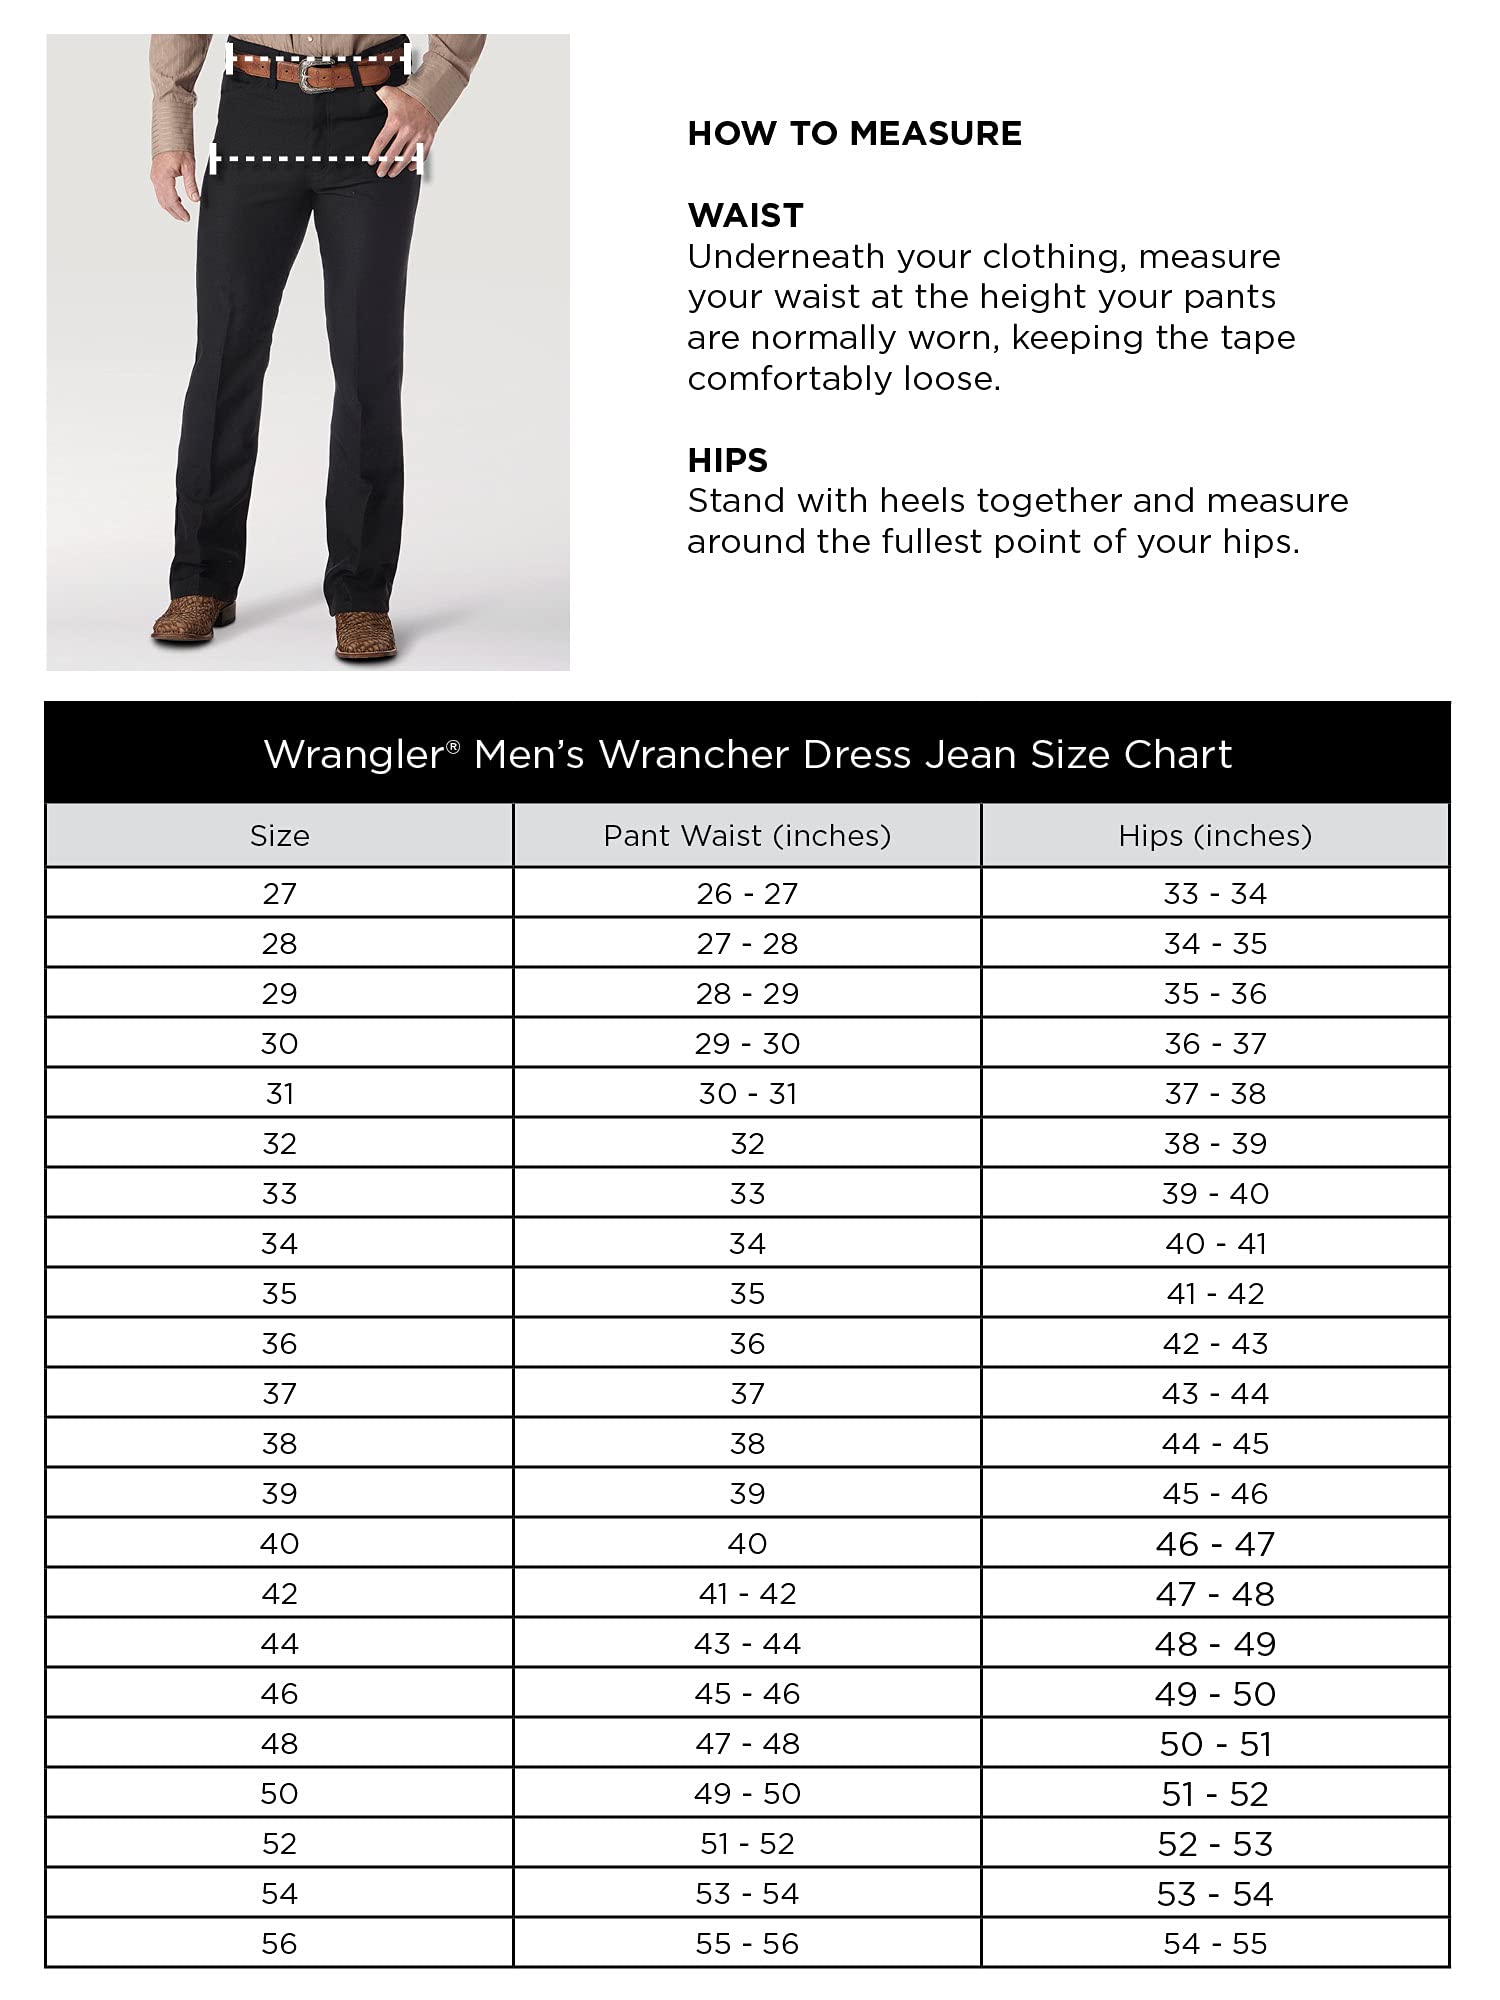 Wrangler Men's Wrancher Dress Jean